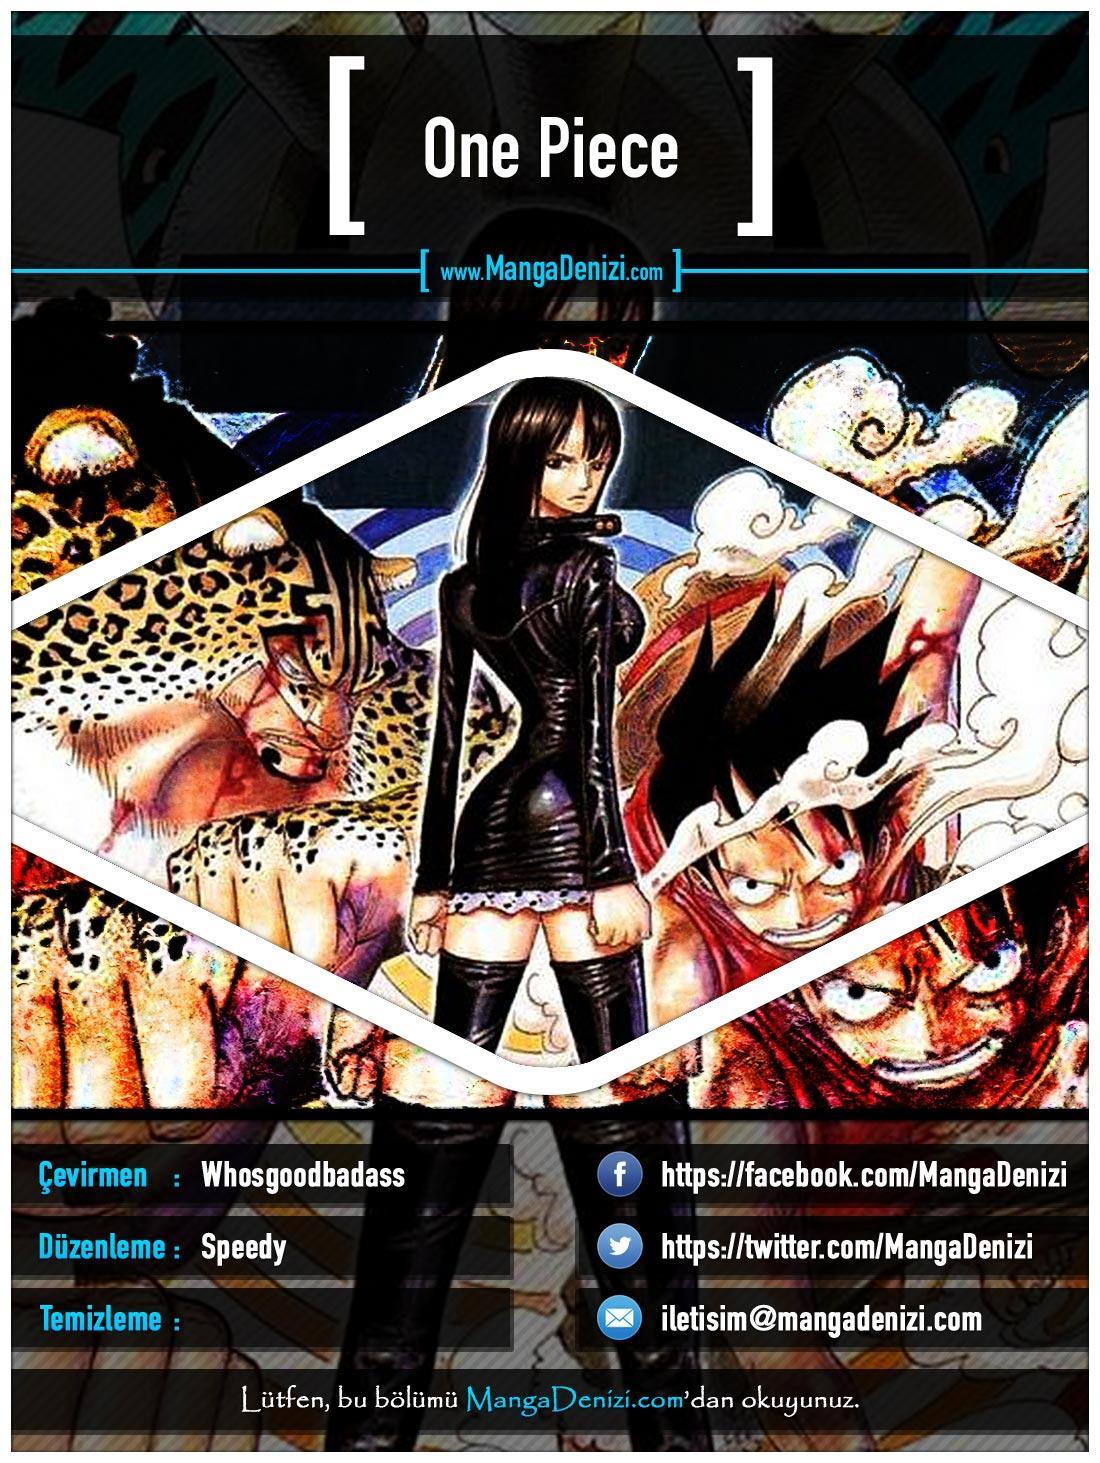 One Piece [Renkli] mangasının 0338 bölümünün 1. sayfasını okuyorsunuz.